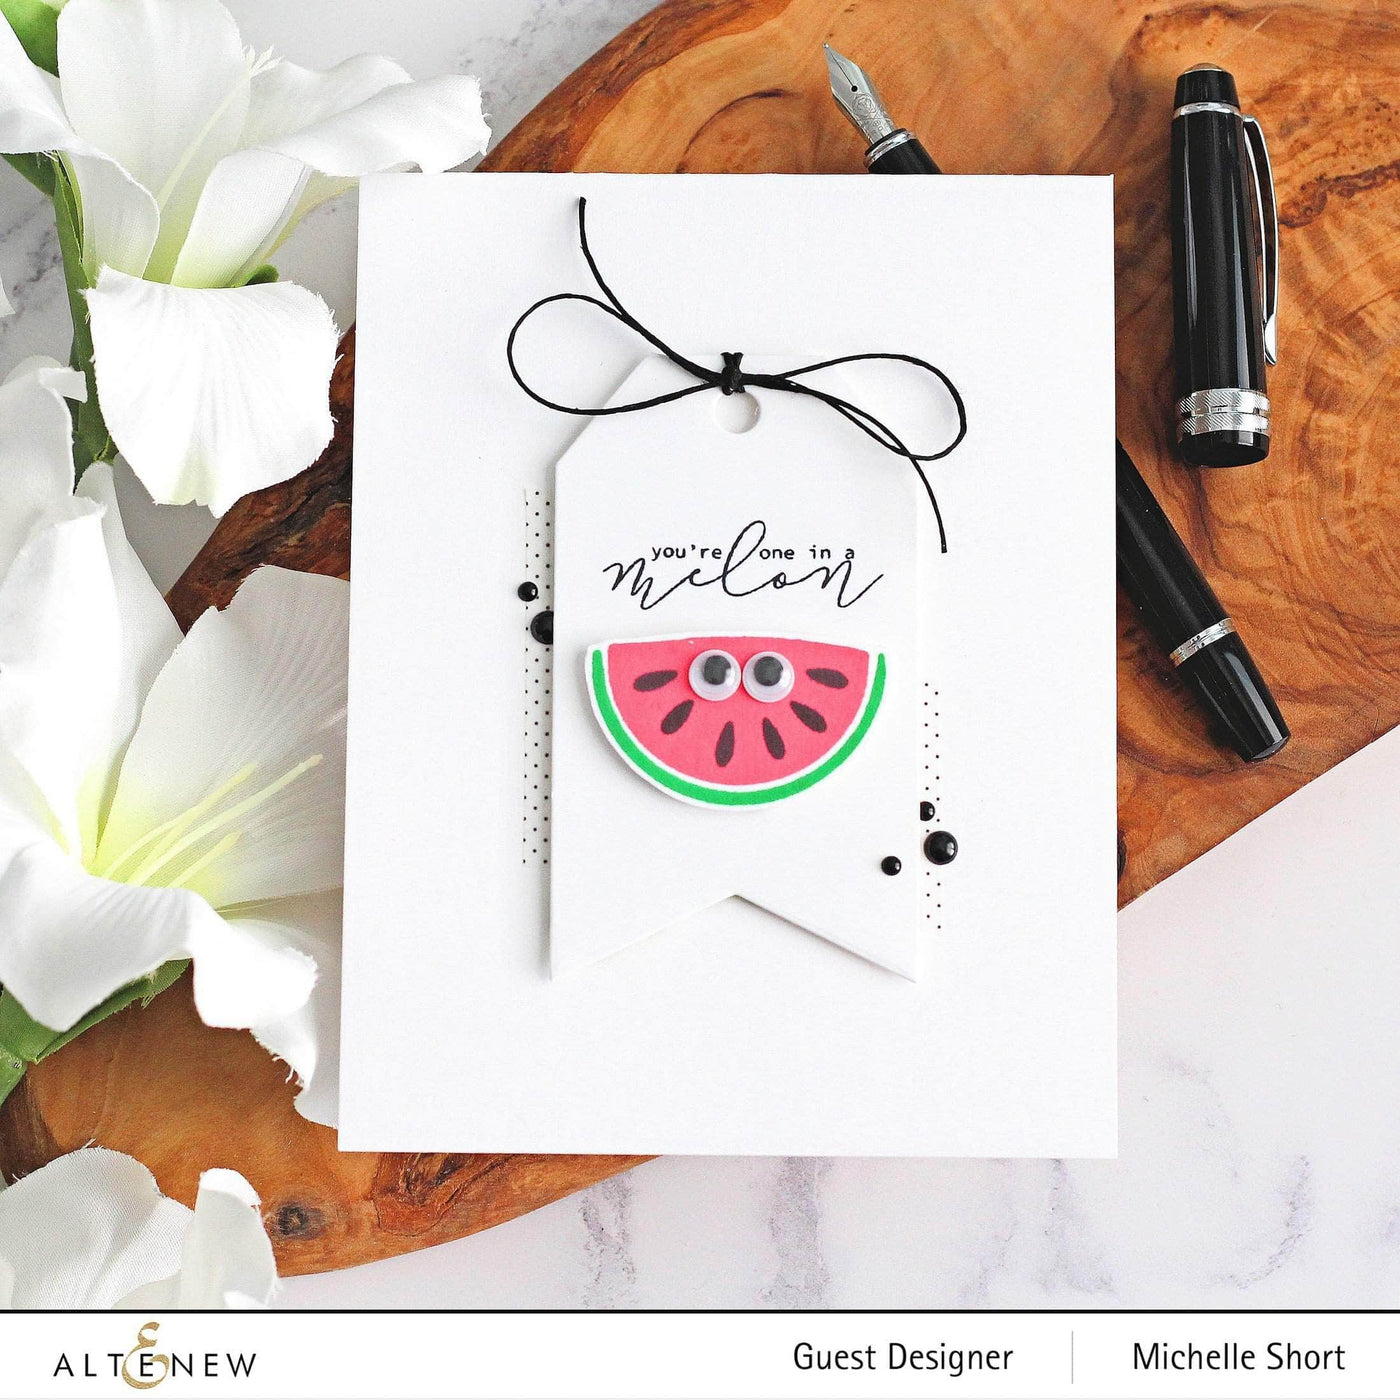 Mini Delight Mini Delight: One in a Melon Stamp & Die Set